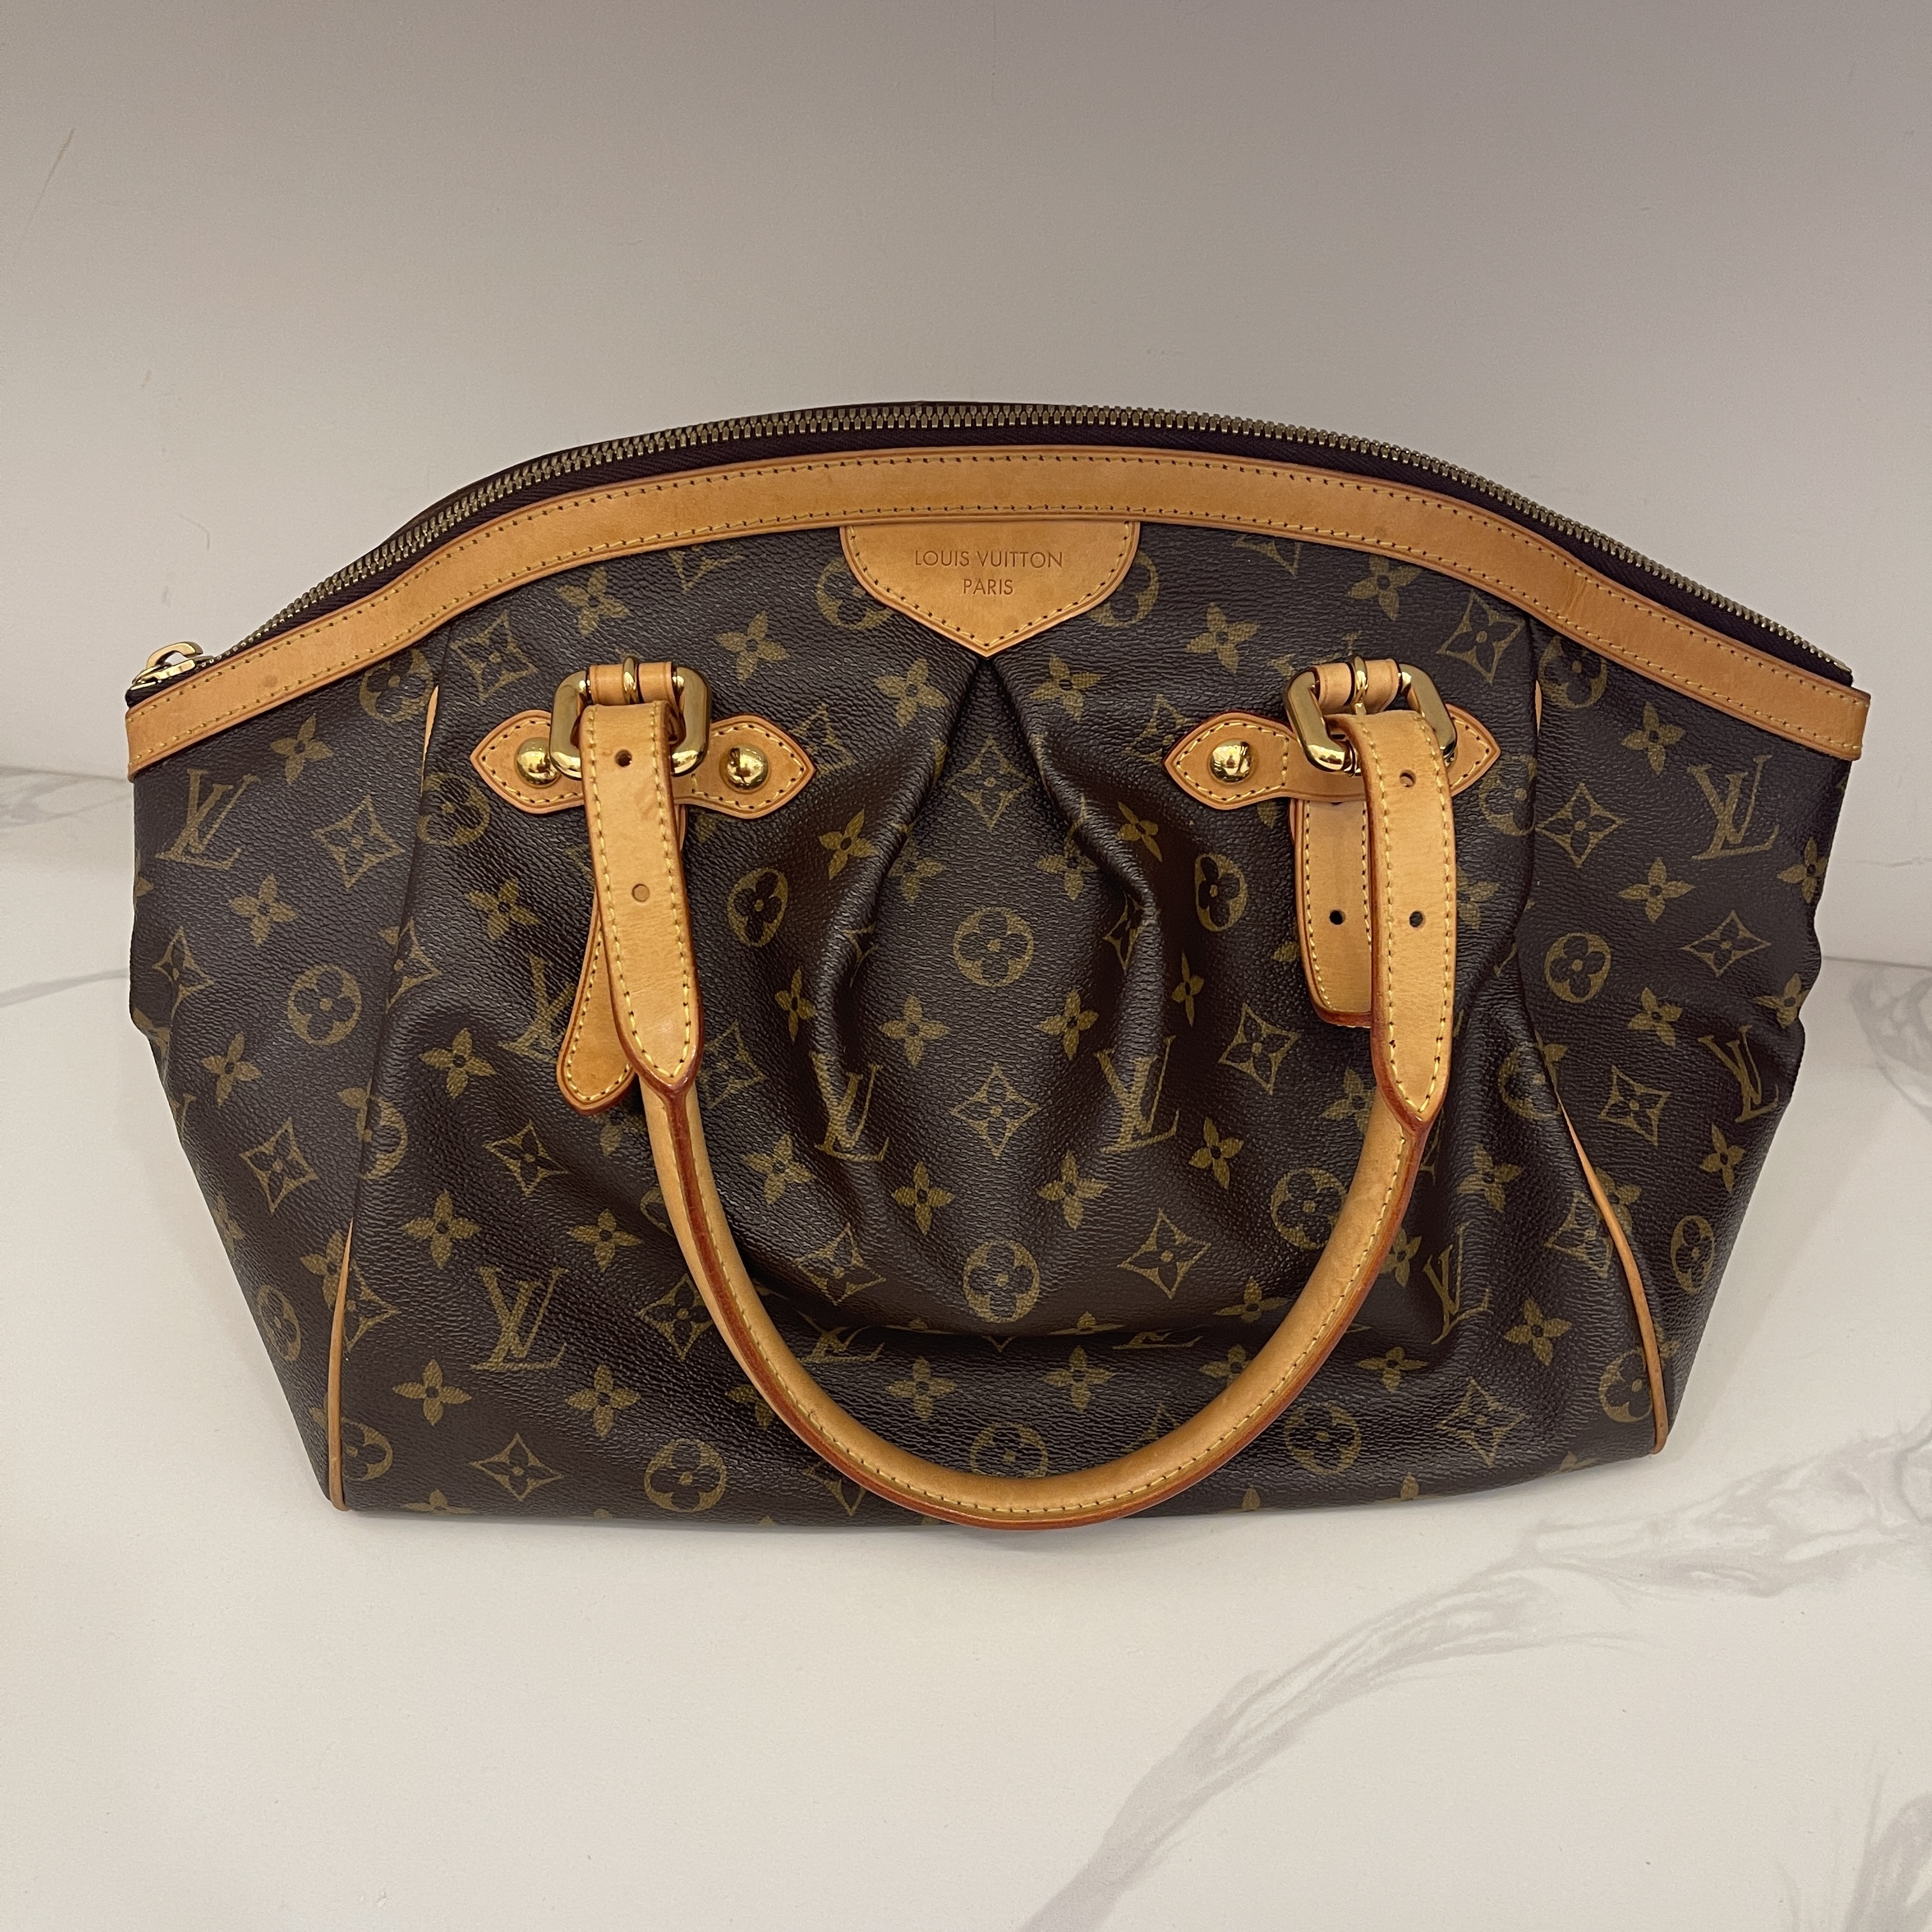 Louis Vuitton Tivoli GM Handbag Monogram M40144 SP1088